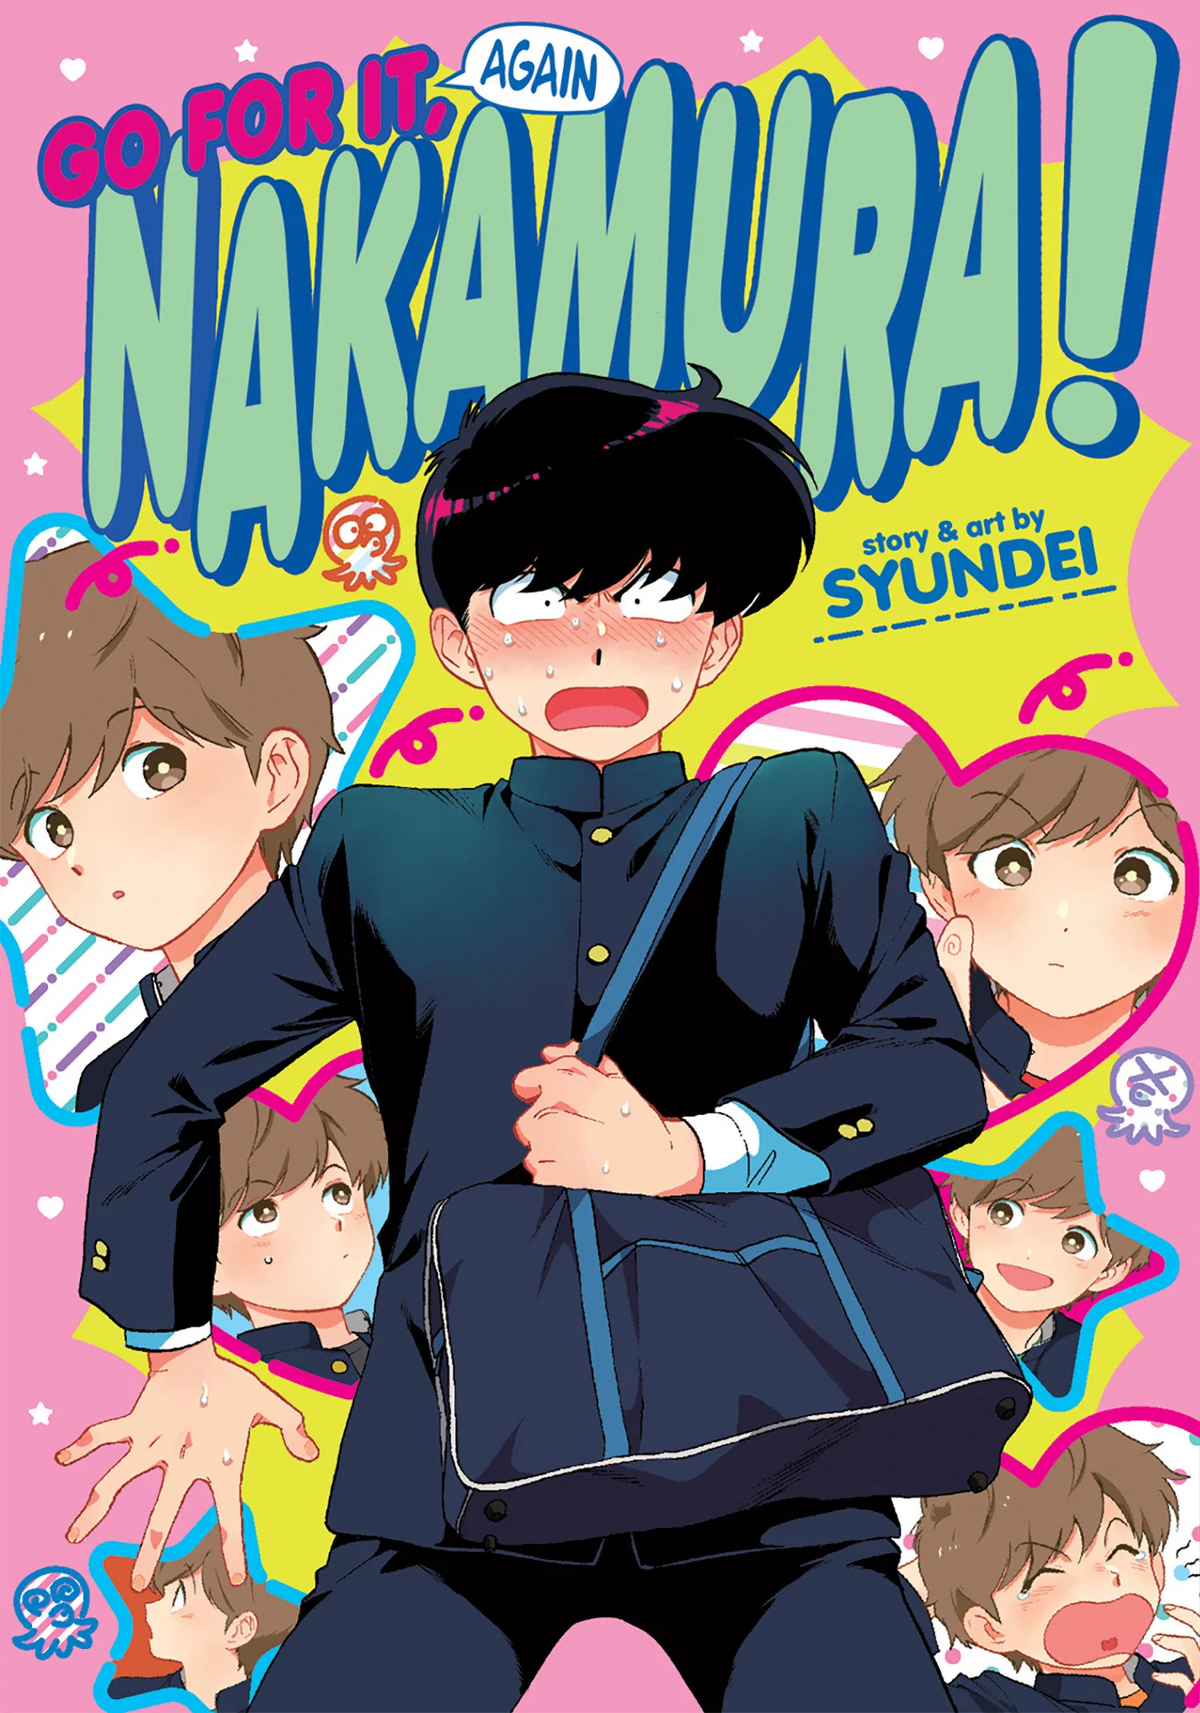 Go For It Nakamura Vol 3 Go For It Again, Nakamura! | Go For It, Nakamura! Wiki | Fandom